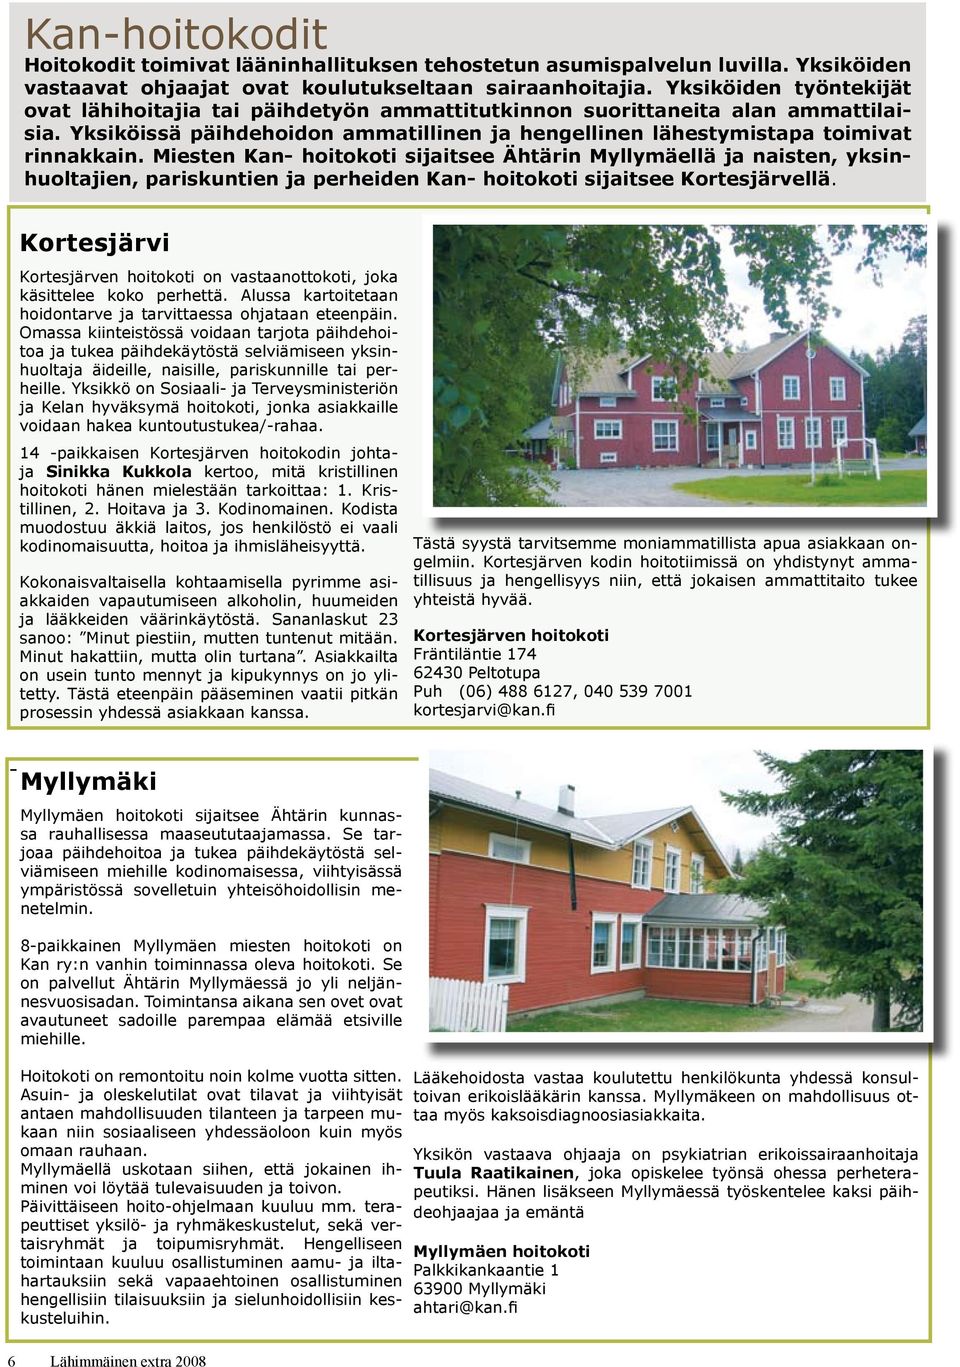 Miesten Kan- hoitokoti sijaitsee Ähtärin Myllymäellä ja naisten, yksinhuoltajien, pariskuntien ja perheiden Kan- hoitokoti sijaitsee Kortesjärvellä.